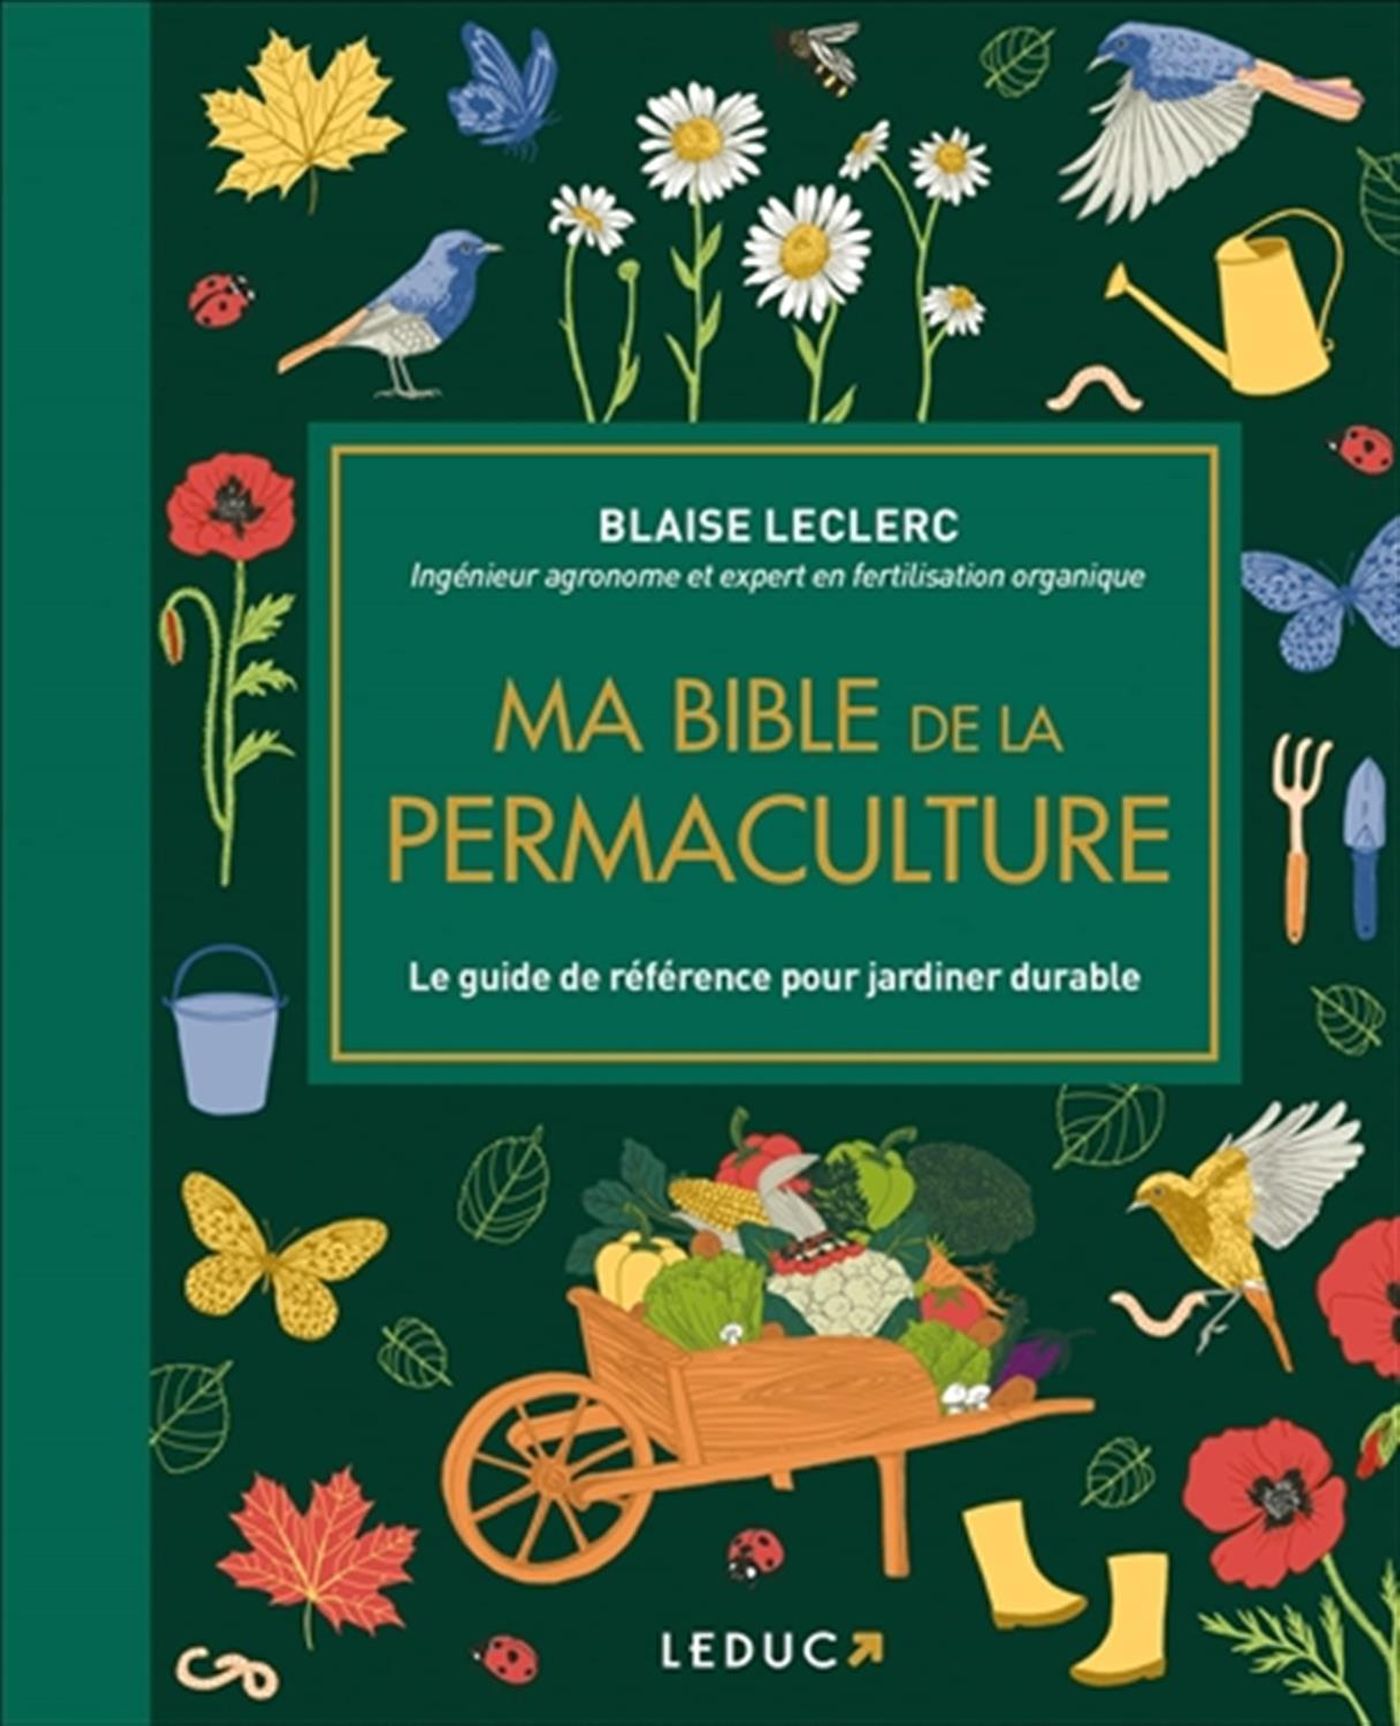 Les meilleurs livres sur la permaculture 